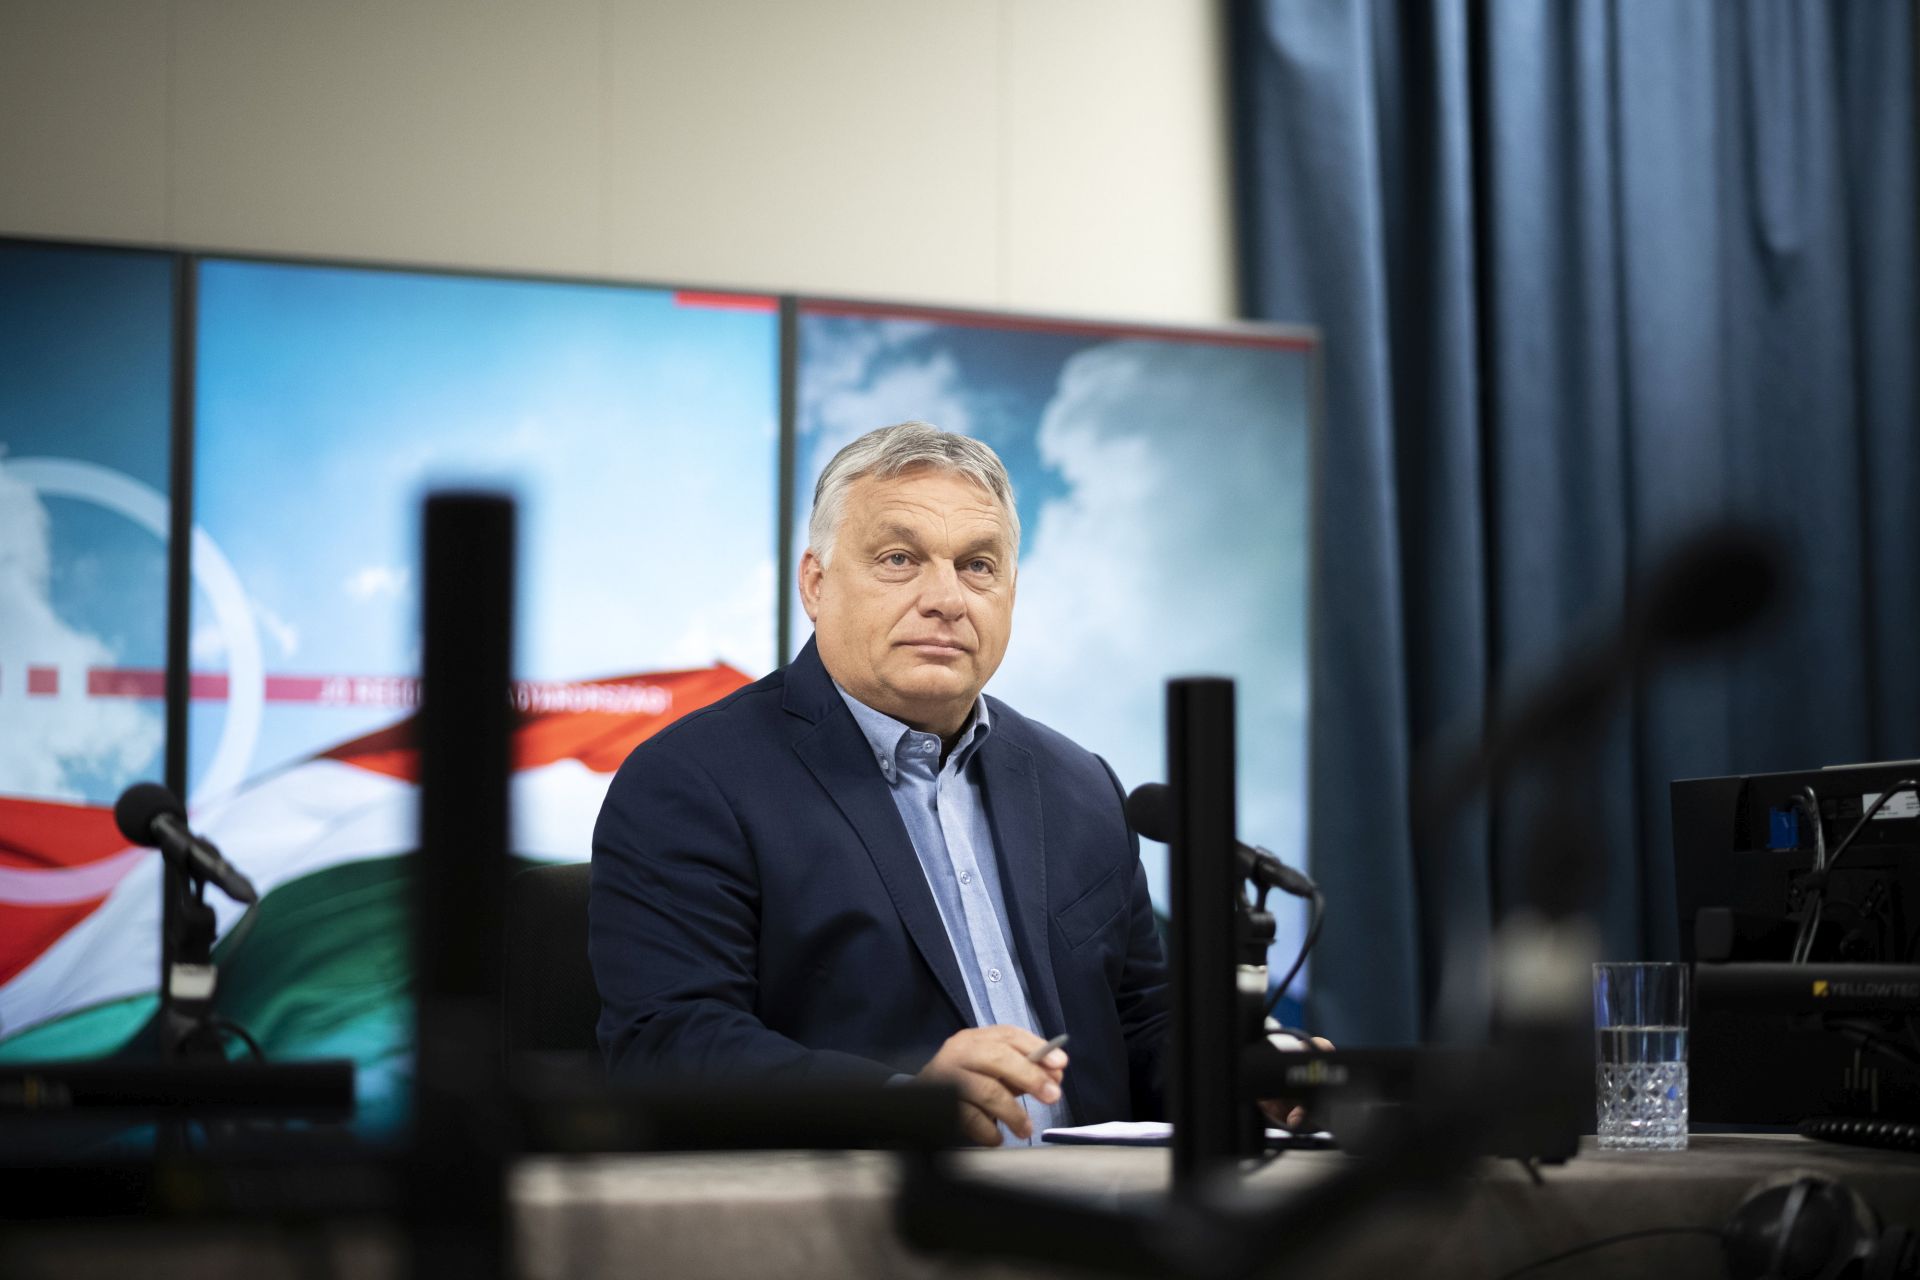 Orbán Viktor: az európai gazdaság tüdőn lőtte magát